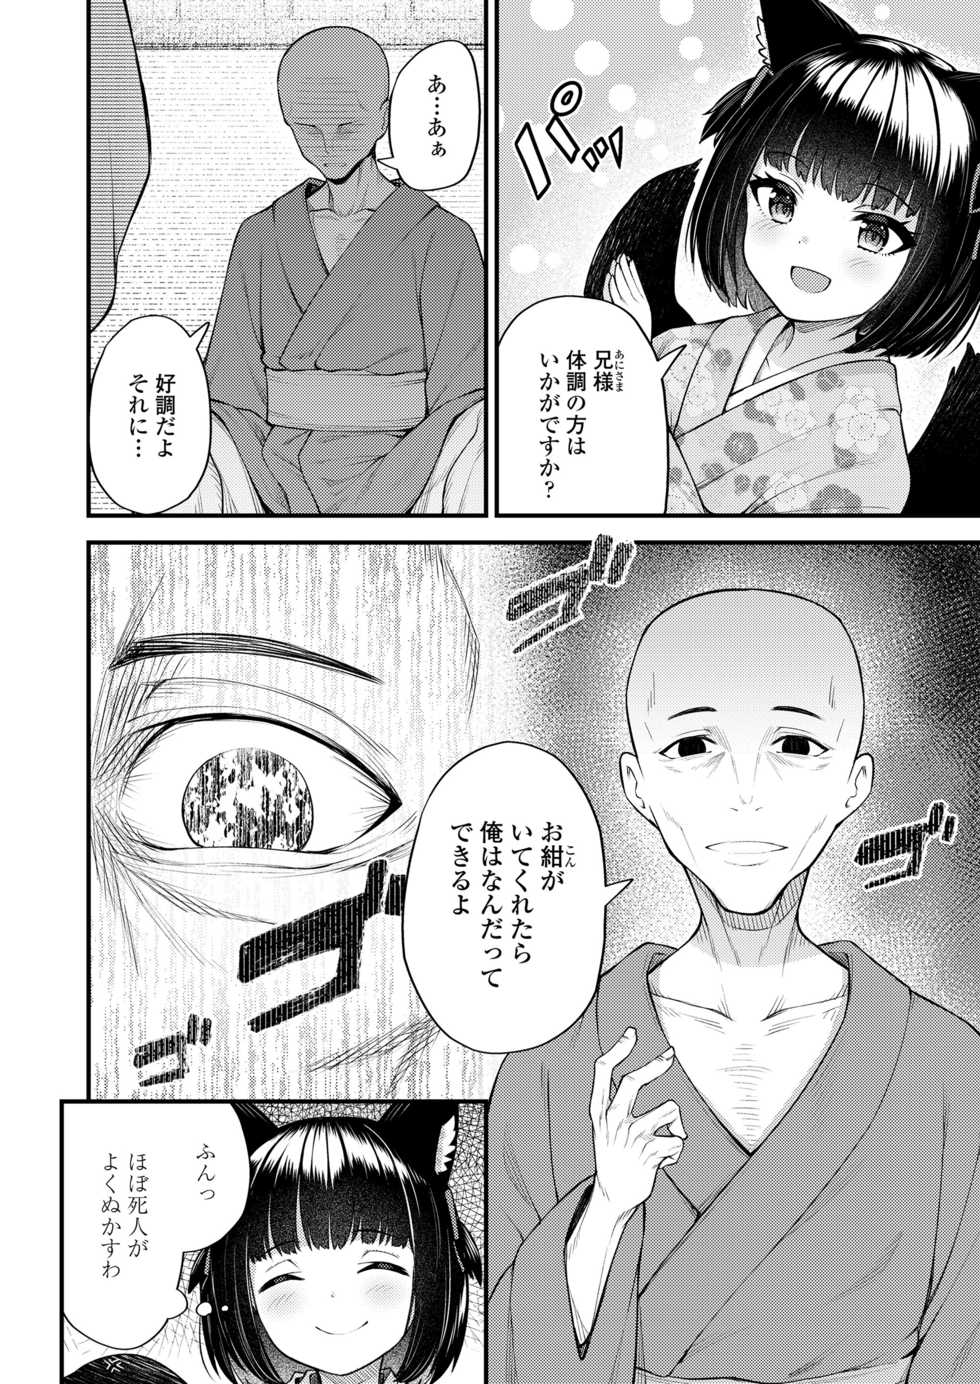 Towako 10 [Digital] - Page 26